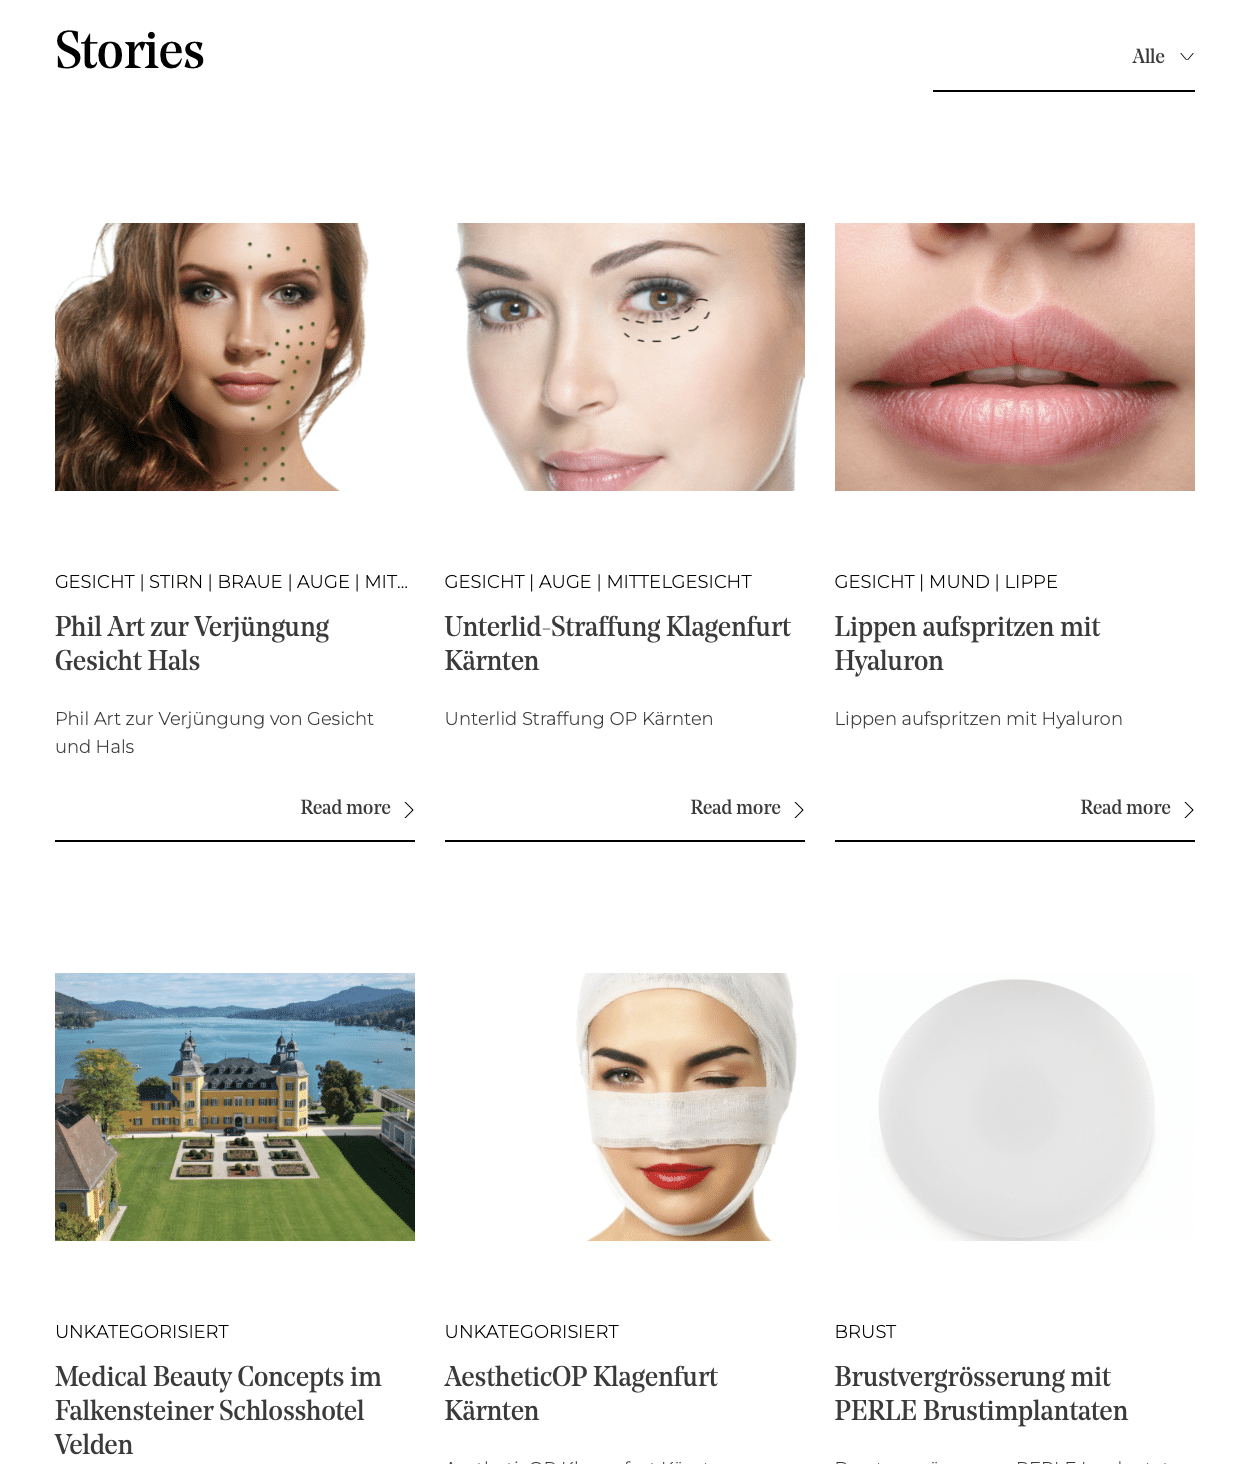 Collage von ästhetischen Behandlungen mit Fokus auf das Gesicht, einschließlich einer speziellen Erwähnung von Brustvergrößerung mit PERLE Brustimplantaten, verfügbar in Klagenfurt, Kärnten.